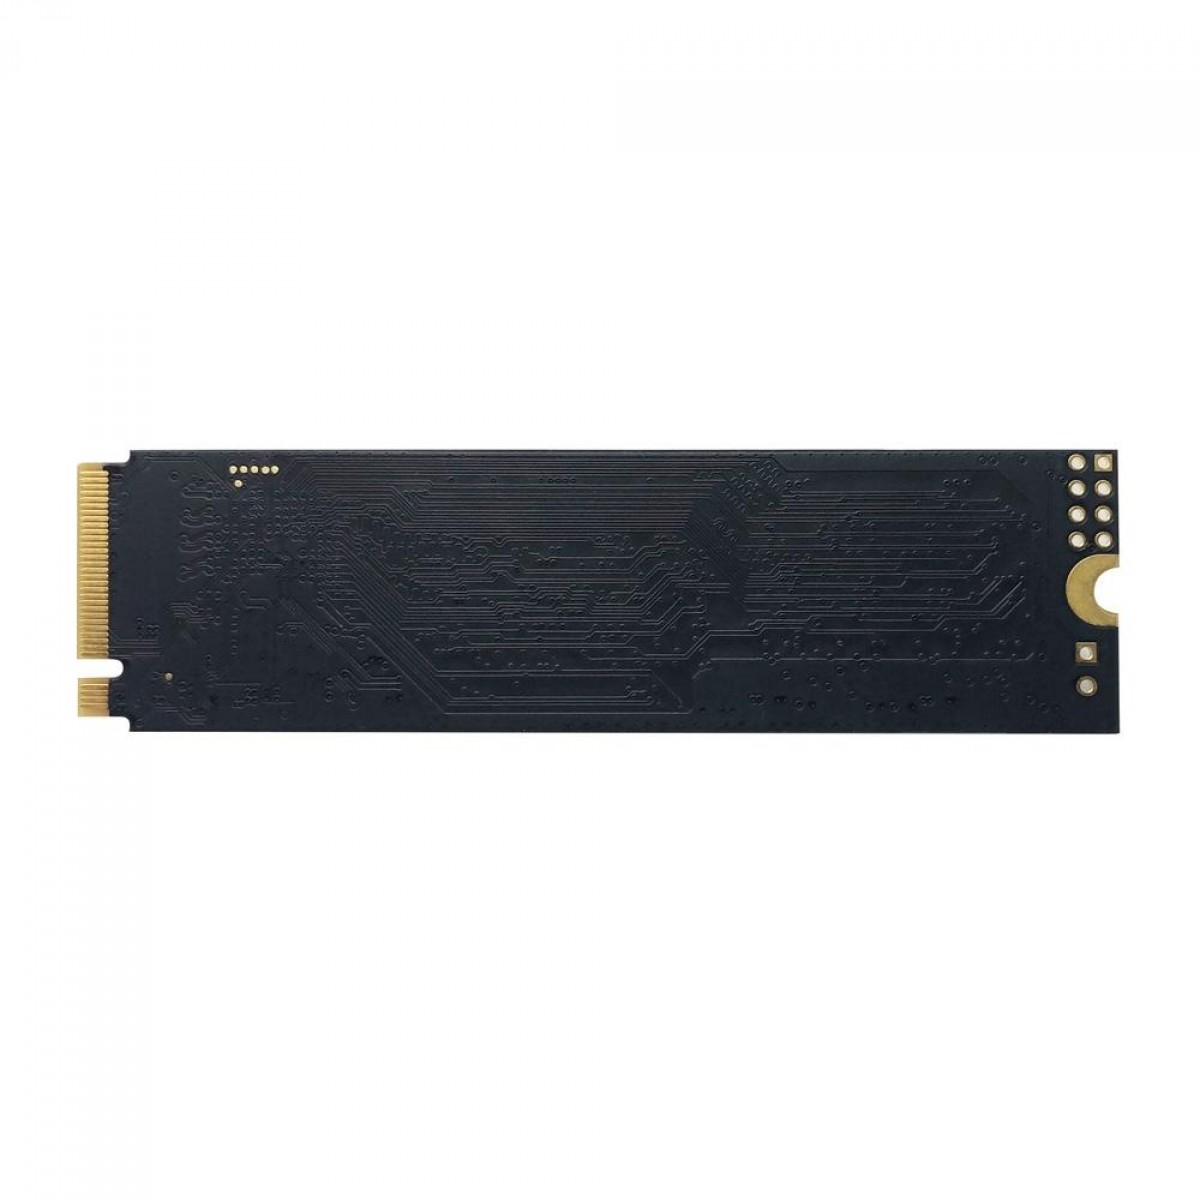 SSD Patriot P300, 512GB, M.2 2280 NVME, Leitura 1700MBs e Gravação 1100MBs, P300P512GM28